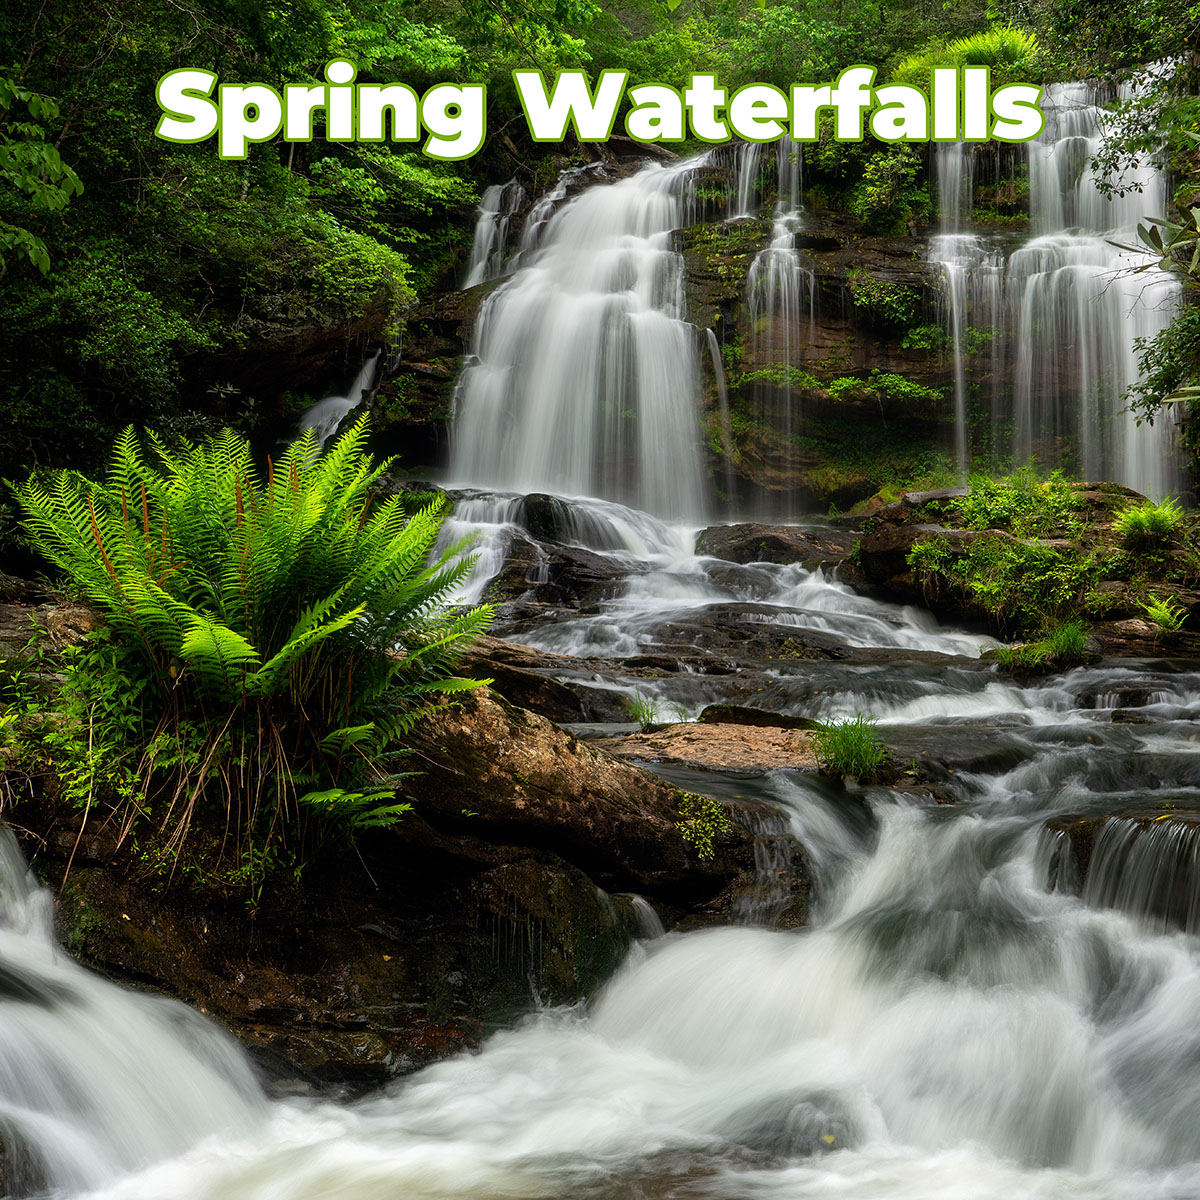 Spring Waterfall Workshop